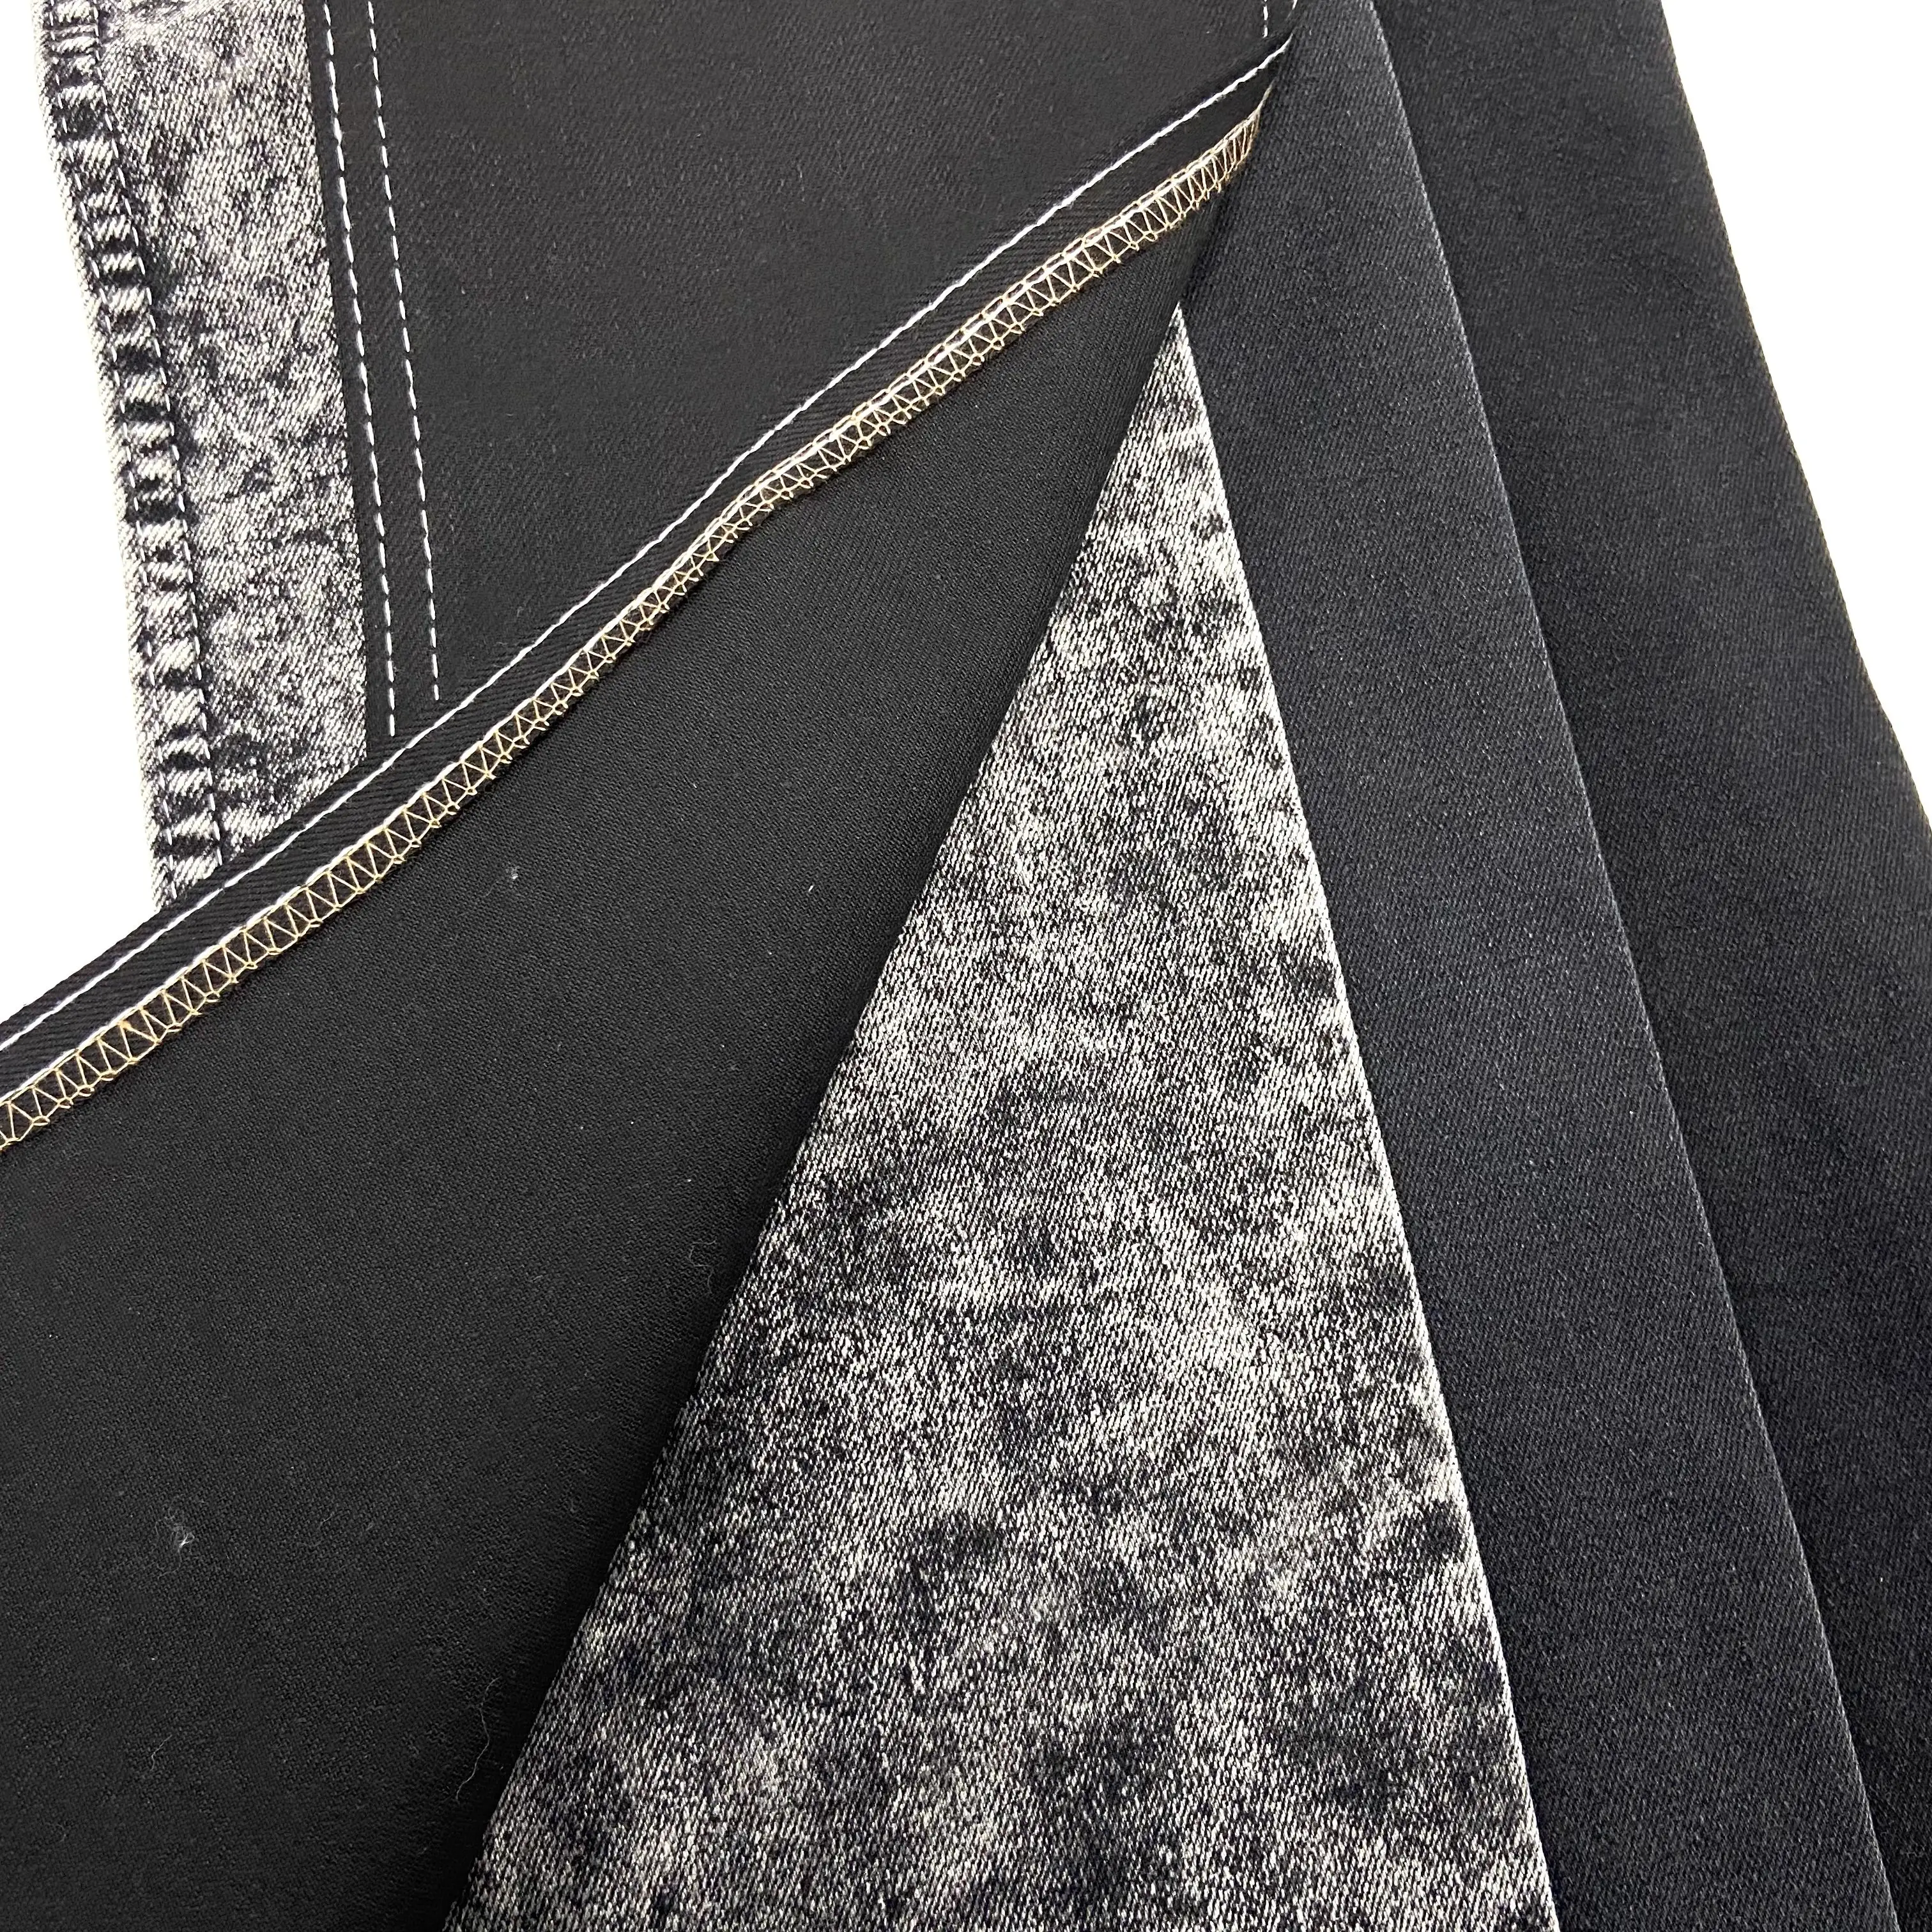 Noir noir couleur Jean stock lot tissu denim italien tissu de haute qualité